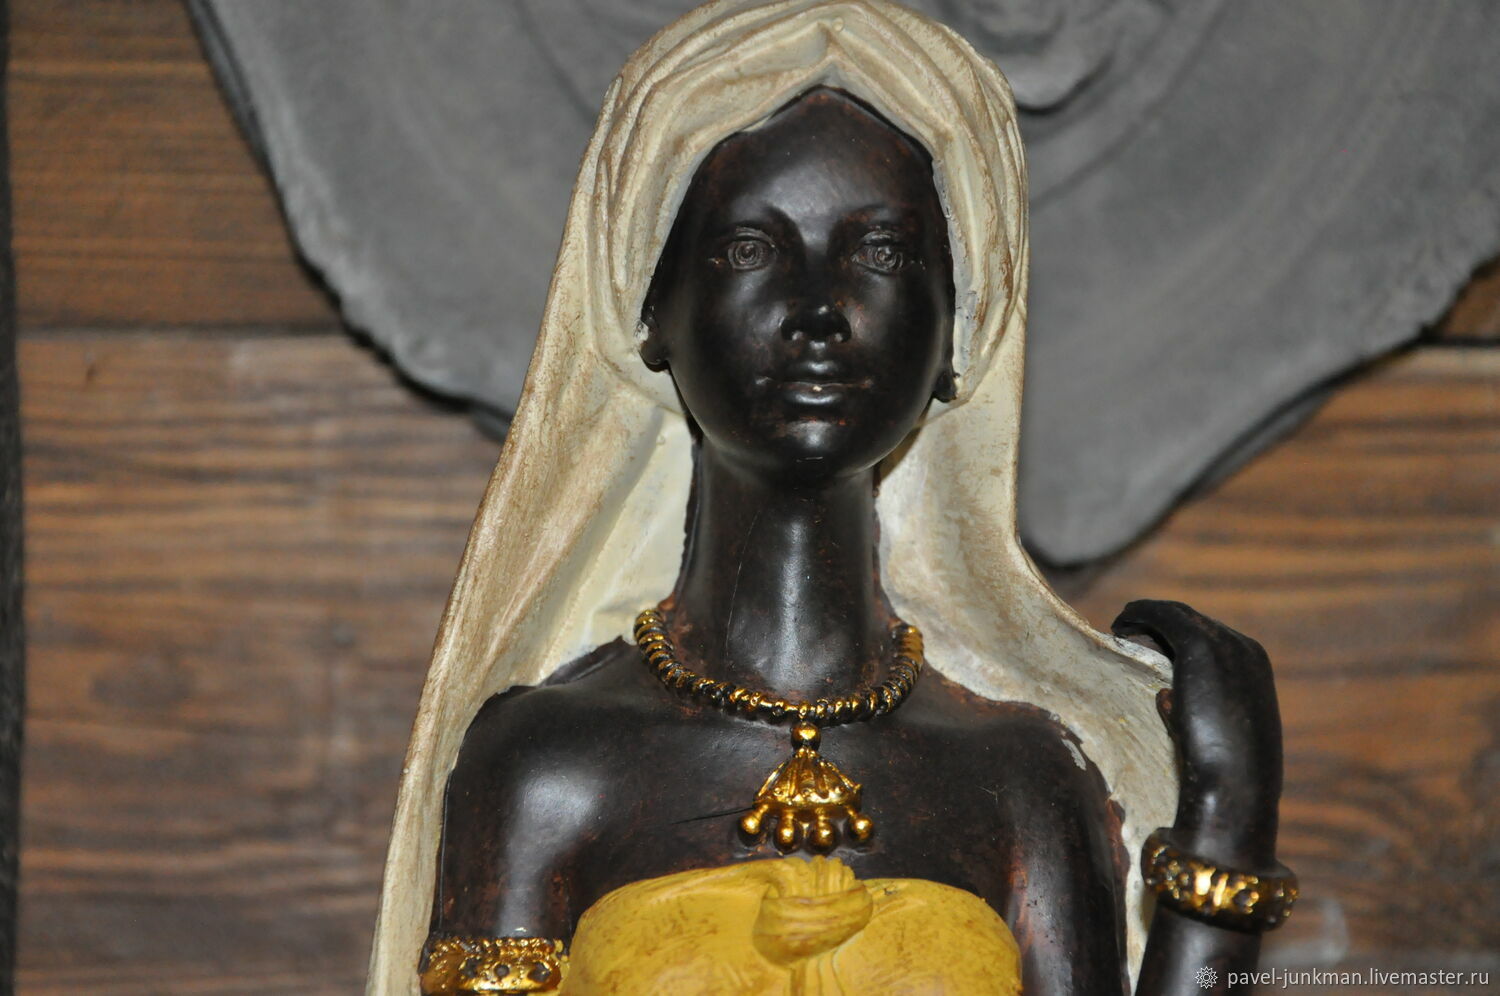 Купить африканские статуэтки, недорогие фигурки из африки с доставкой в Москве